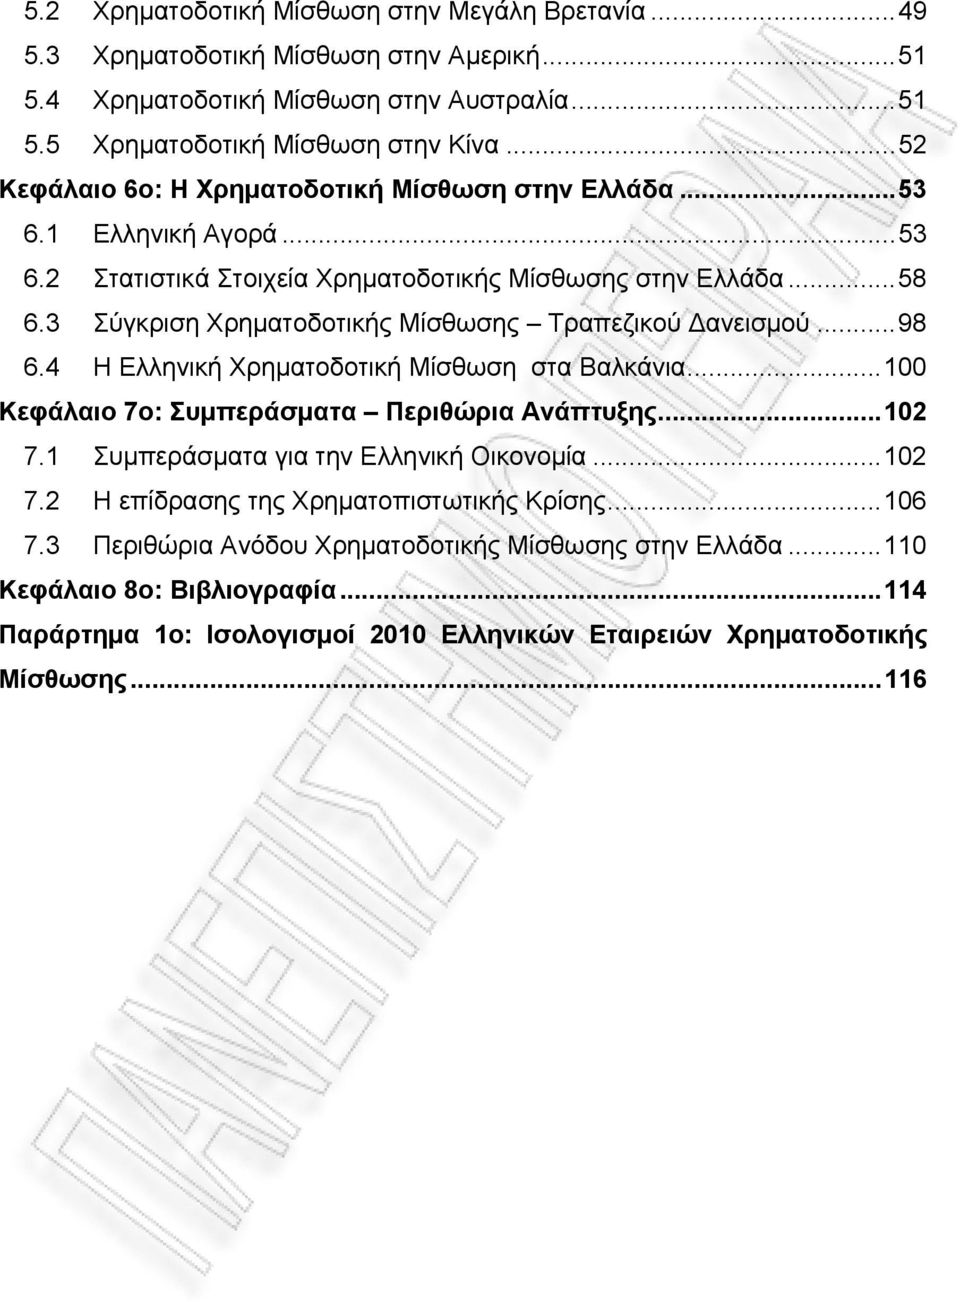 3 Σύγκριση Χρηματοδοτικής Μίσθωσης Τραπεζικού ανεισμού... 98 6.4 Η Ελληνική Χρηματοδοτική Μίσθωση στα Βαλκάνια... 100 Κεφάλαιο 7ο: Συμπεράσματα Περιθώρια Ανάπτυξης... 102 7.